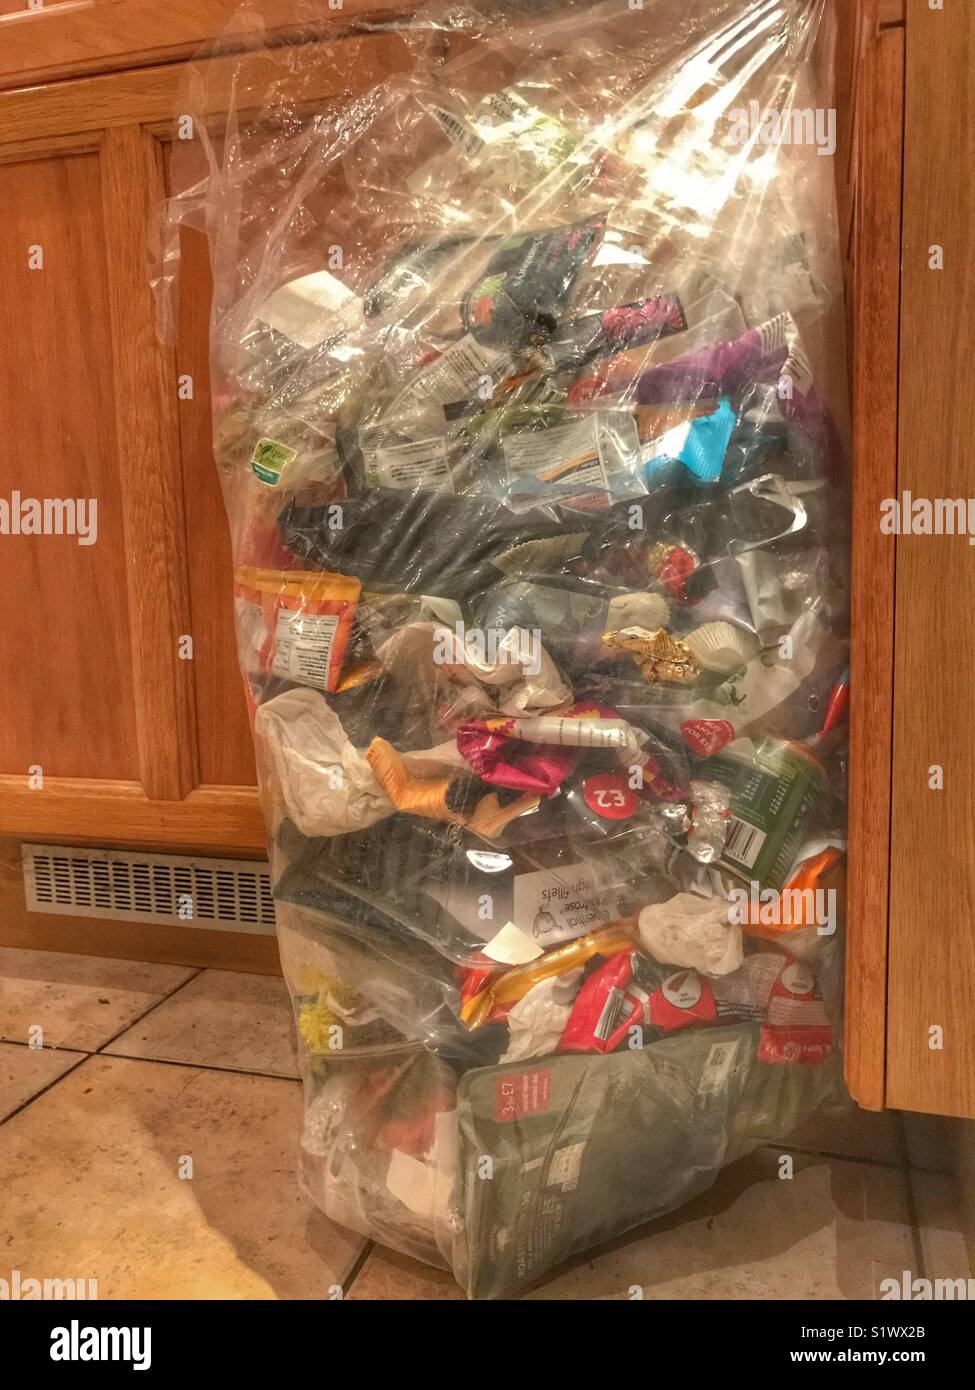 Les questions d'environnement. Les ordures ménagères non recyclables, y compris les emballages alimentaires en plastique à base de fruits et légumes achetés dans les supermarchés. Banque D'Images